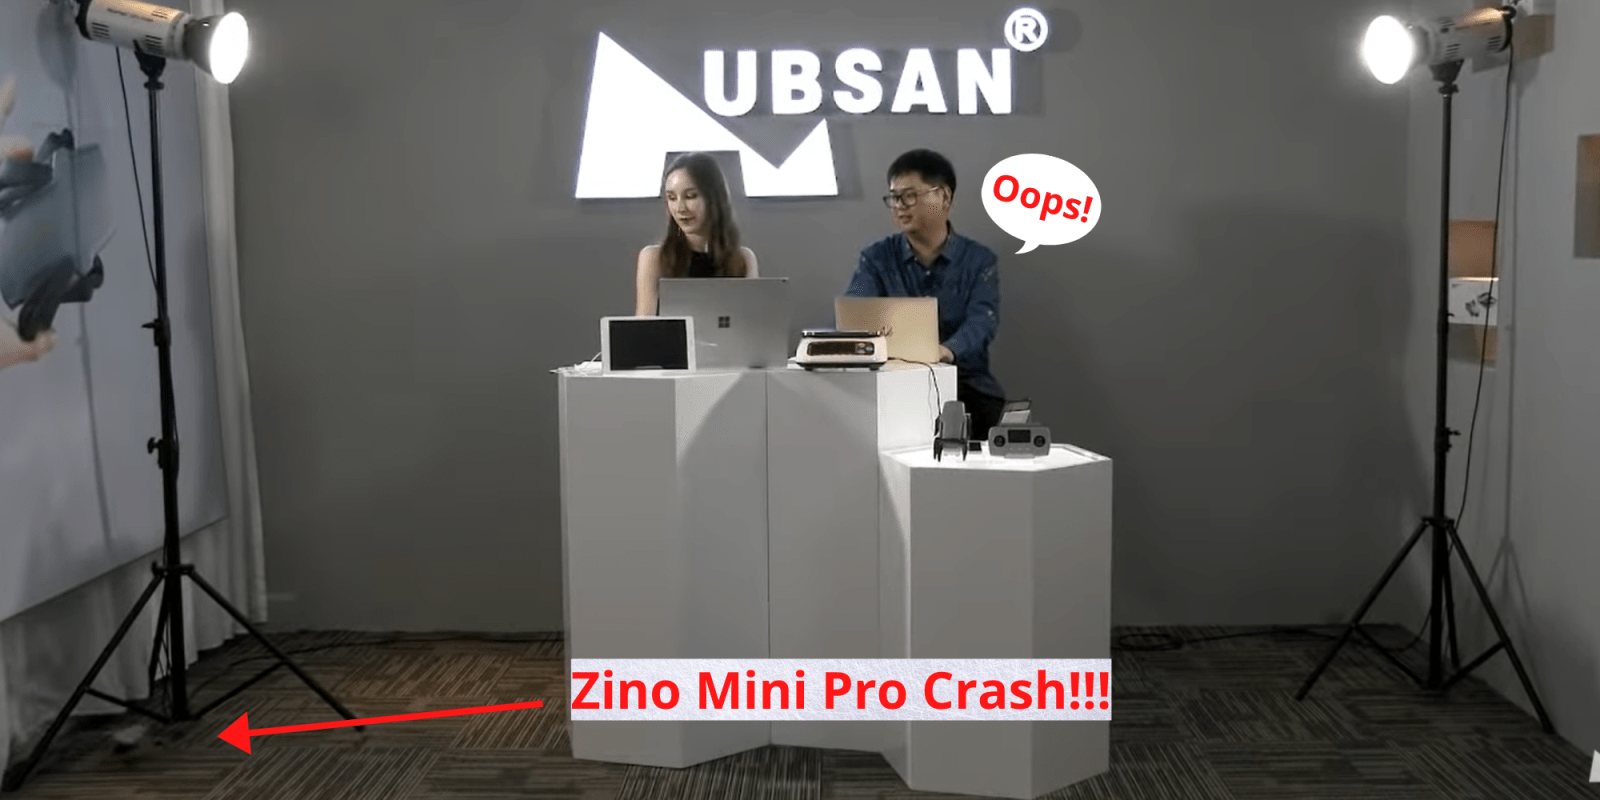 zino mini pro crash